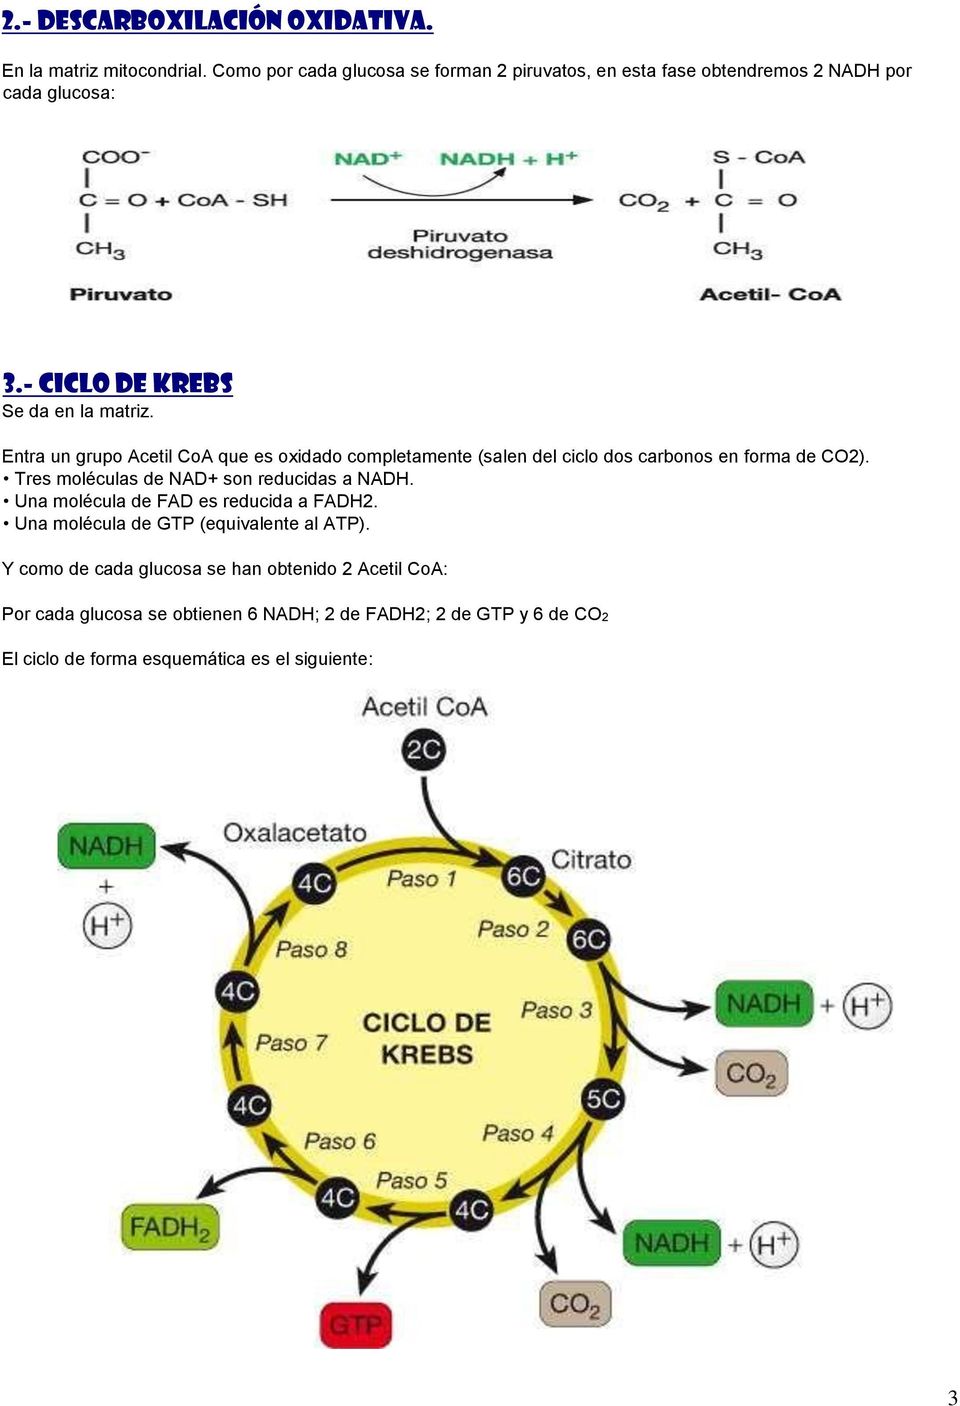 Entra un grupo Acetil CoA que es oxidado completamente (salen del ciclo dos carbonos en forma de CO2). Tres moléculas de NAD+ son reducidas a NADH.